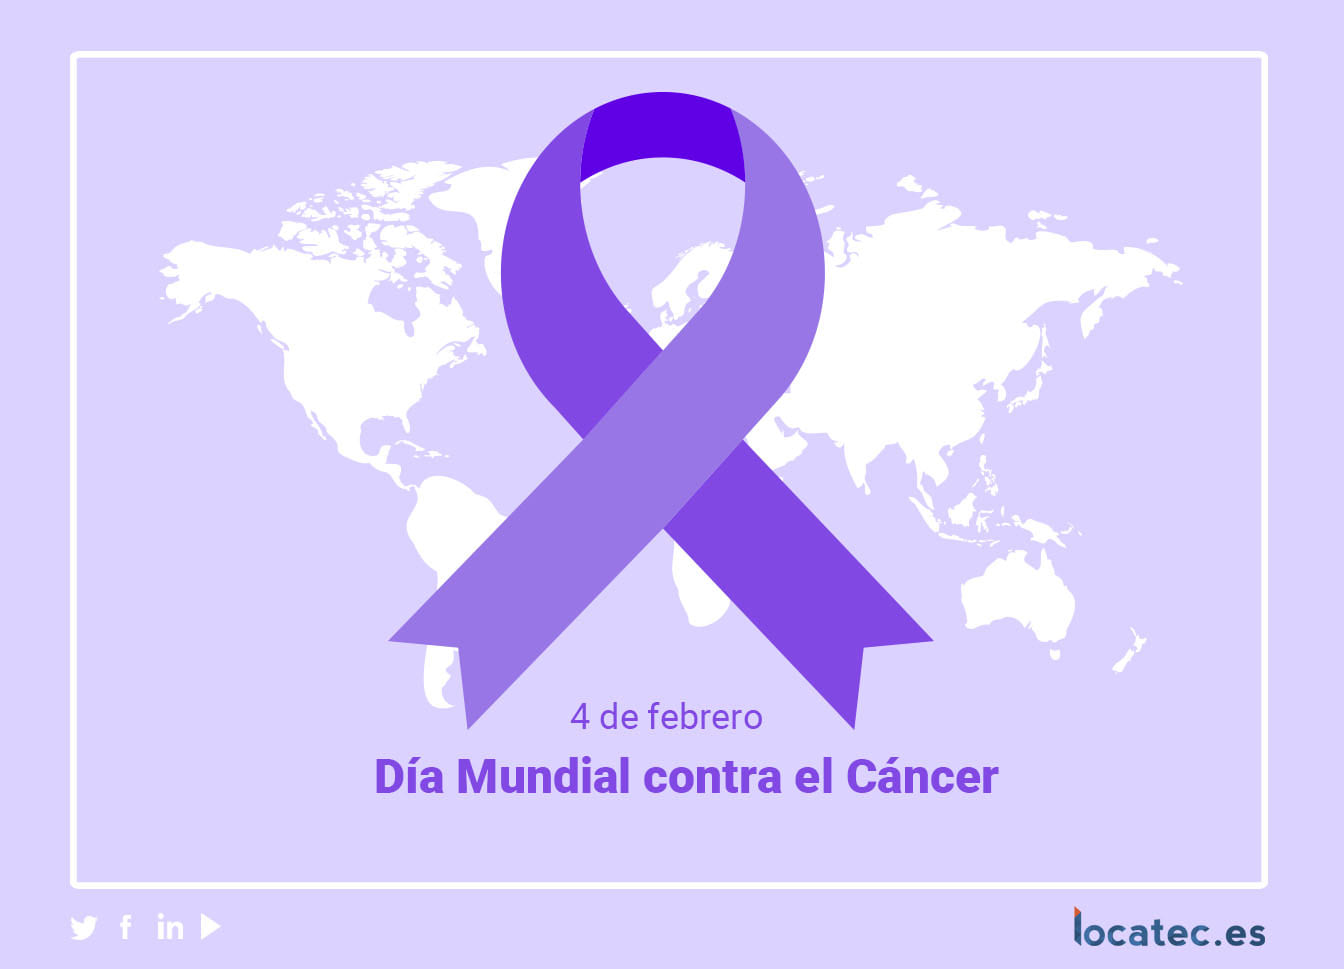 Día mundial contra el cáncer - Locatec.es